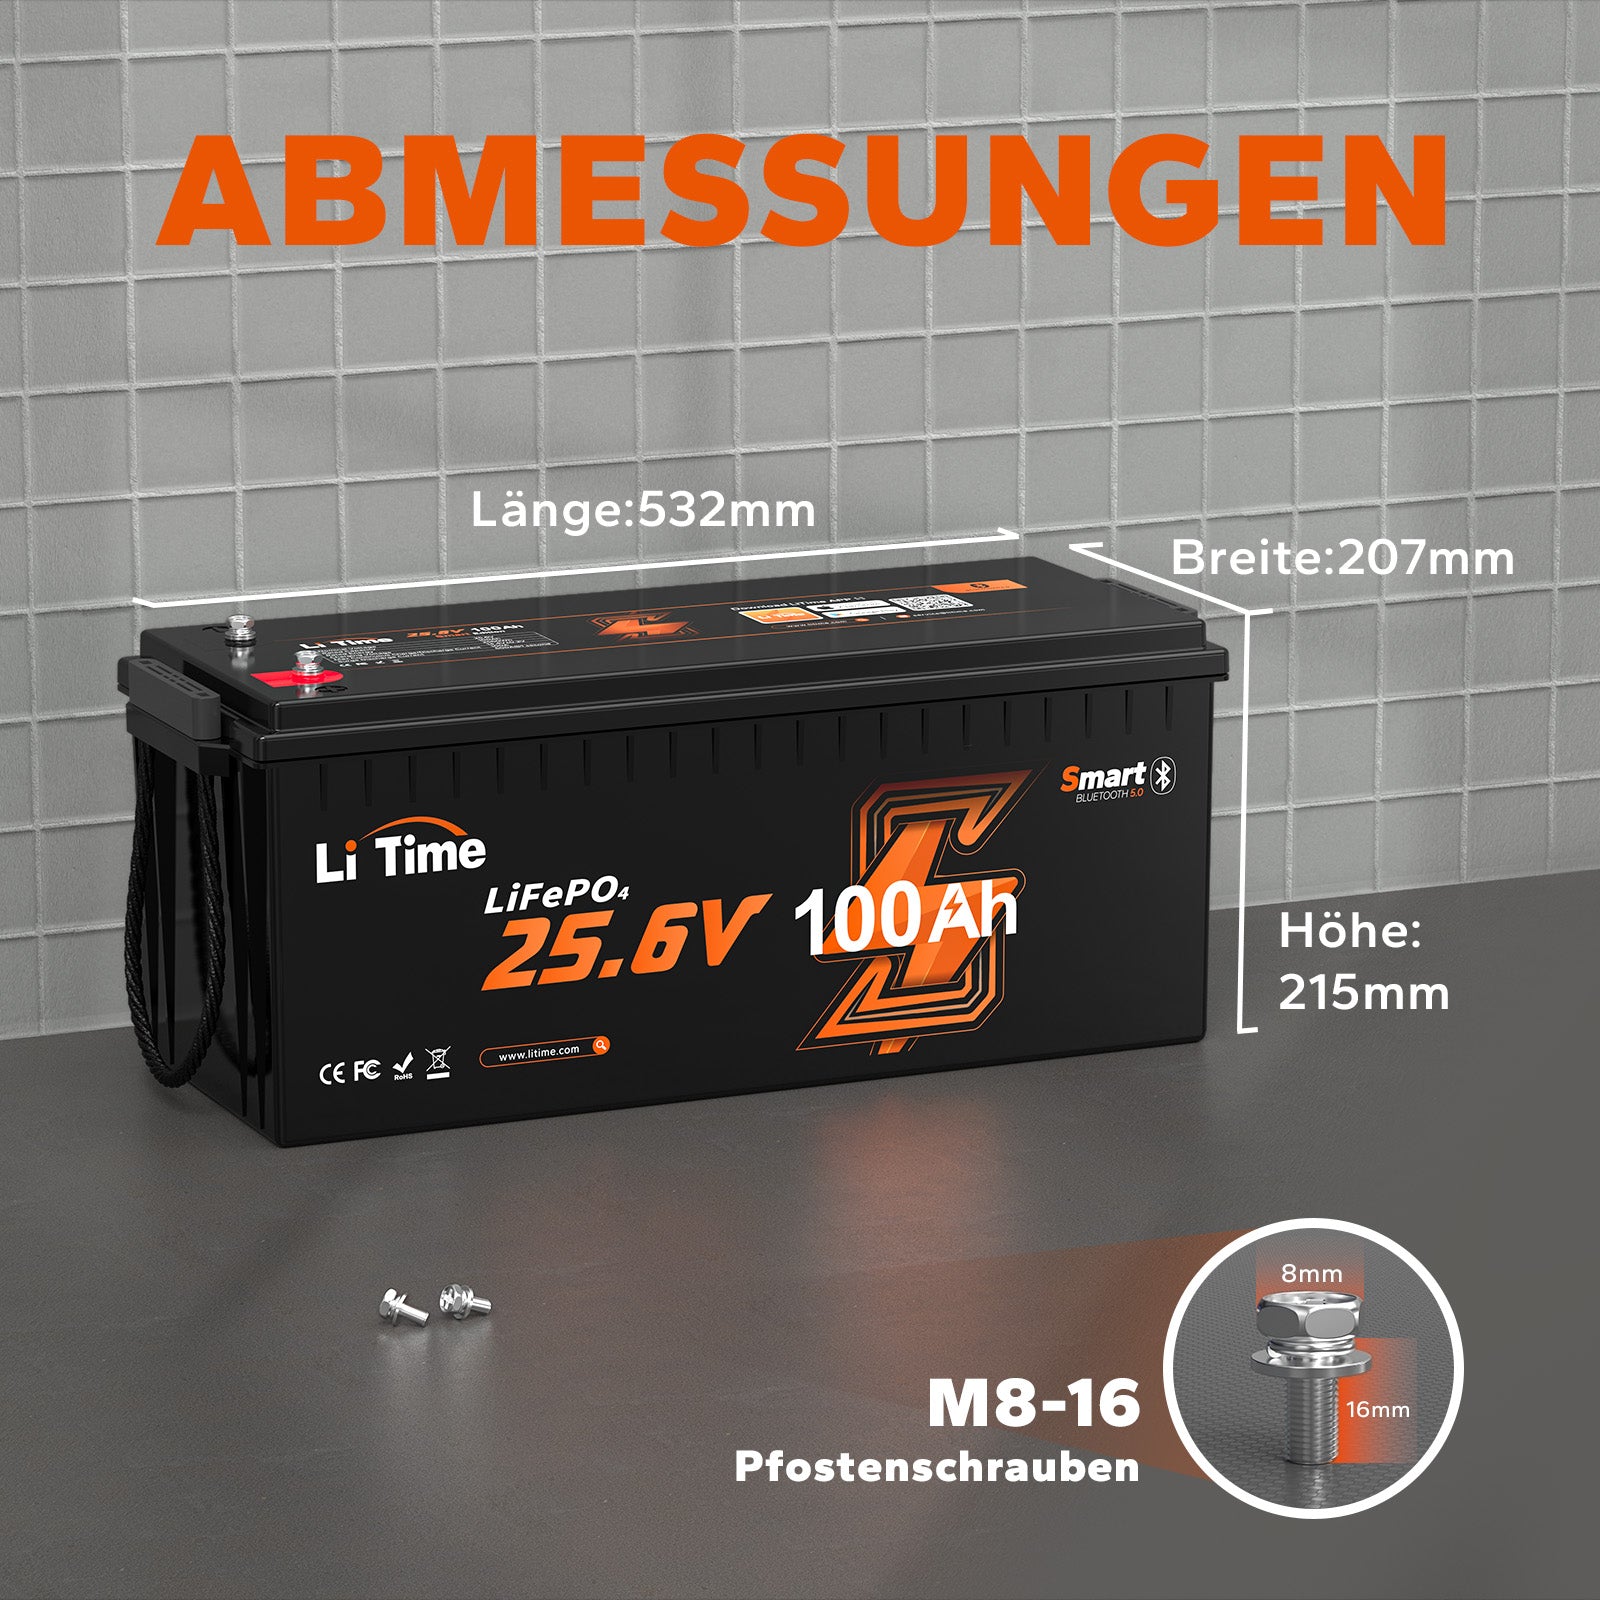 ⚡Prezzo anticipato: € 599,99⚡LiTime 24V 100Ah LiFePO4 con Bluetooth e Smart BMS, protezione dalle basse temperature